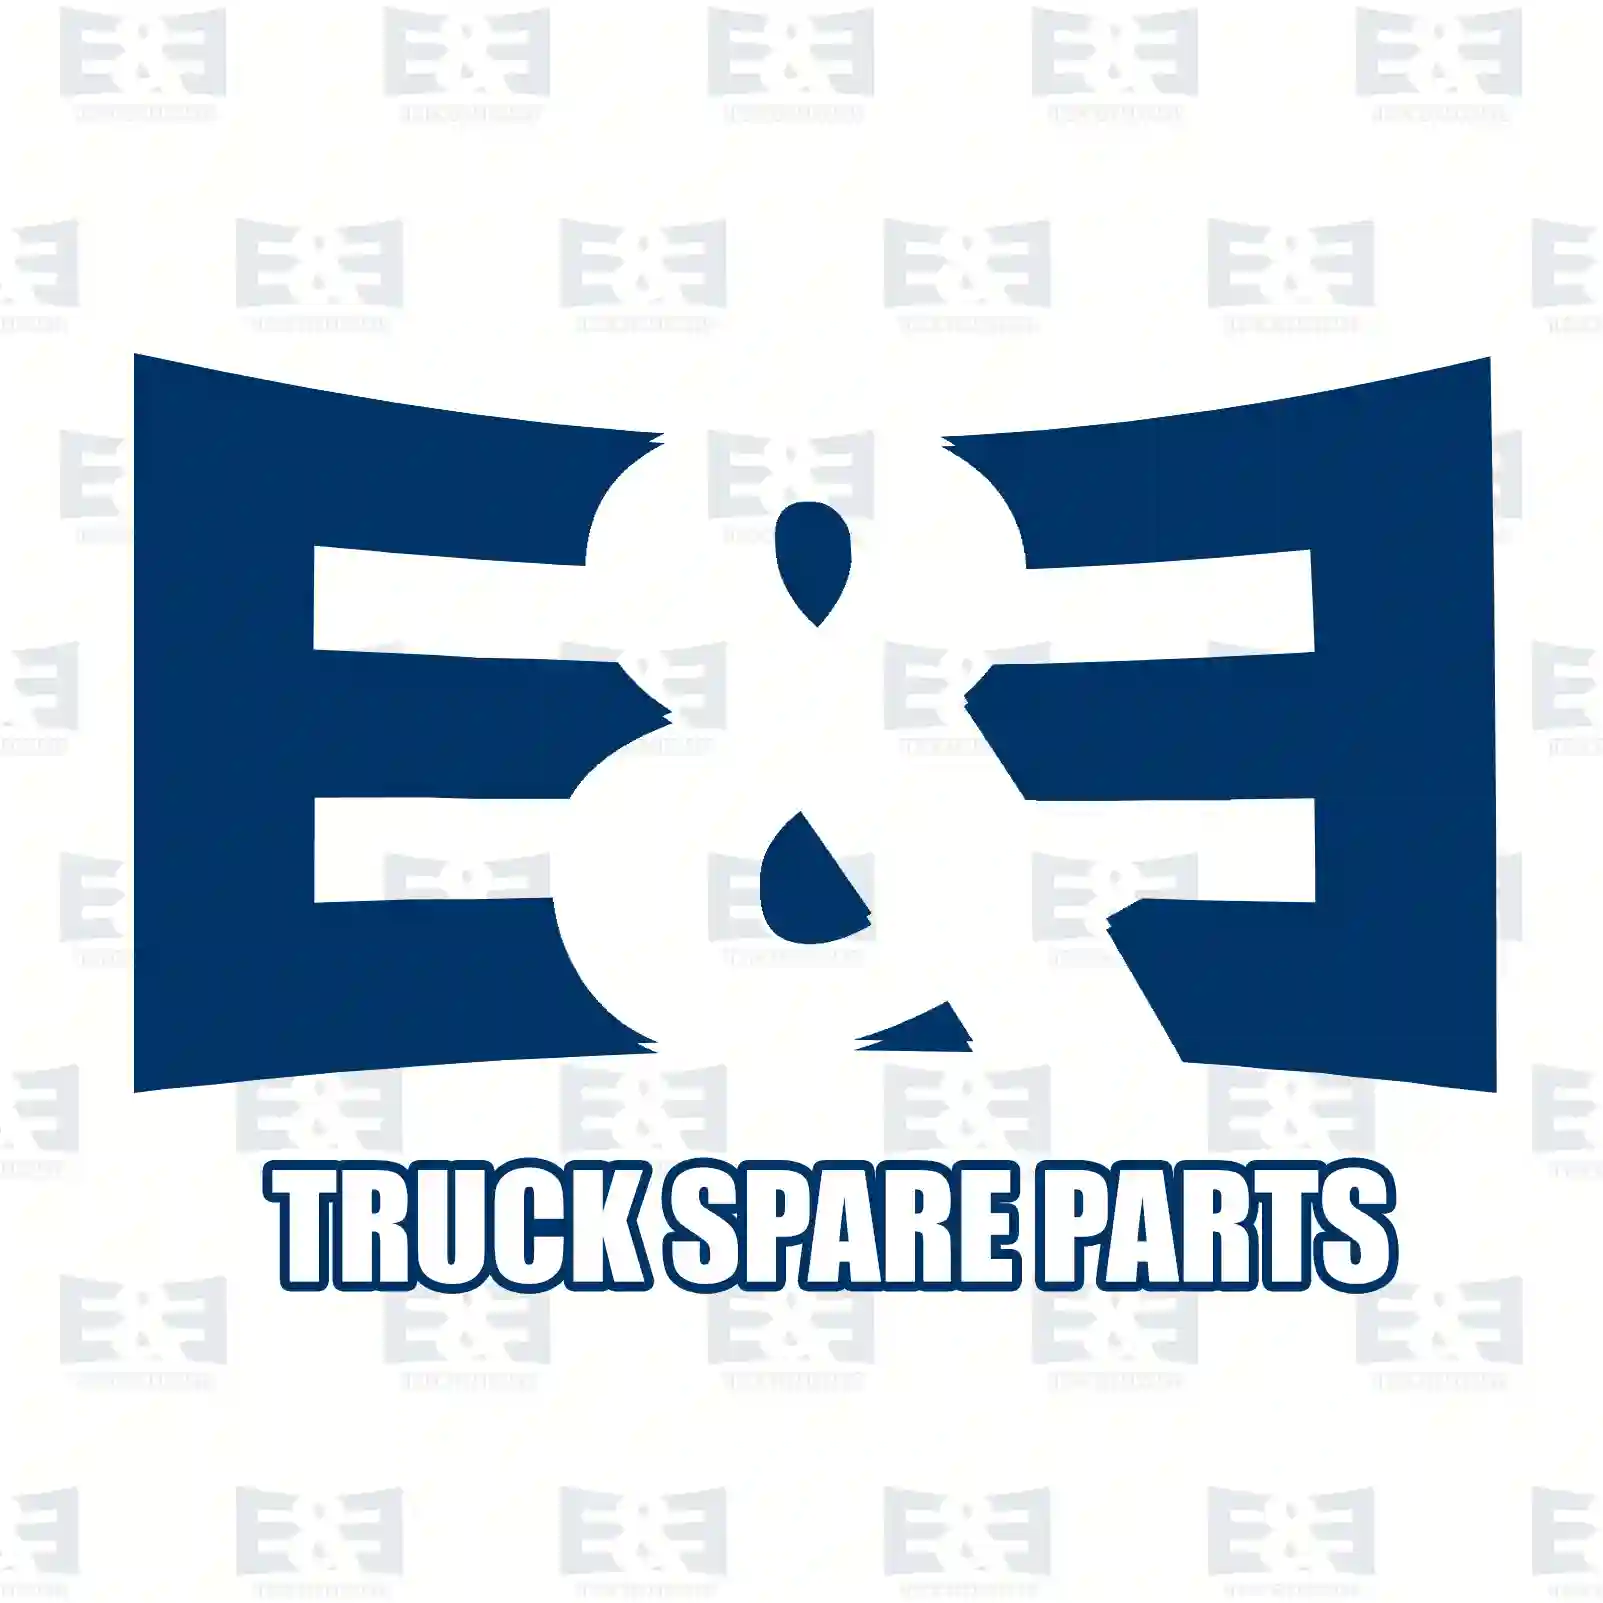 Piston, complete with rings, 2E2209570, 51025006064, 51025006161, 51025006162, 51025006204, 51025006205, 51025006260, 51025006298, 51025016087, 51025016088, 51025016101 ||  2E2209570 E&E Truck Spare Parts | Truck Spare Parts, Auotomotive Spare Parts Piston, complete with rings, 2E2209570, 51025006064, 51025006161, 51025006162, 51025006204, 51025006205, 51025006260, 51025006298, 51025016087, 51025016088, 51025016101 ||  2E2209570 E&E Truck Spare Parts | Truck Spare Parts, Auotomotive Spare Parts